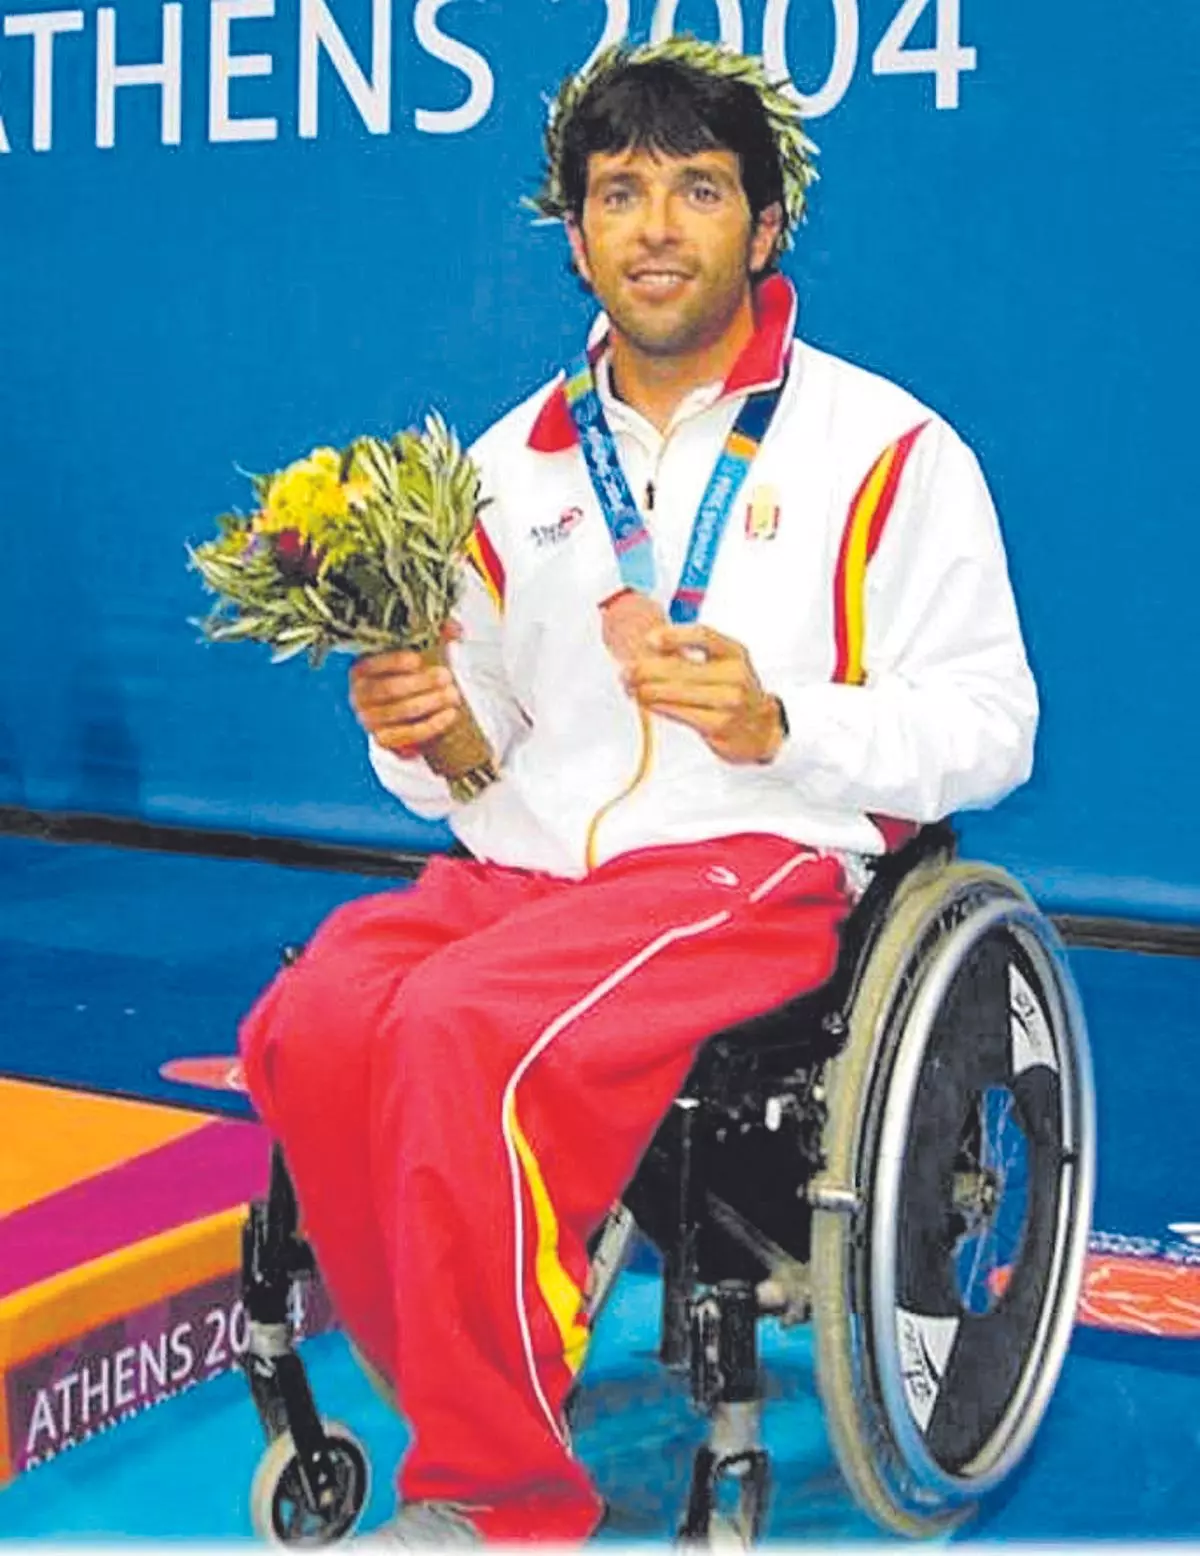 El ondense Pepe Ramos, del bronce paralímpico en natación a campeón de España de pádel